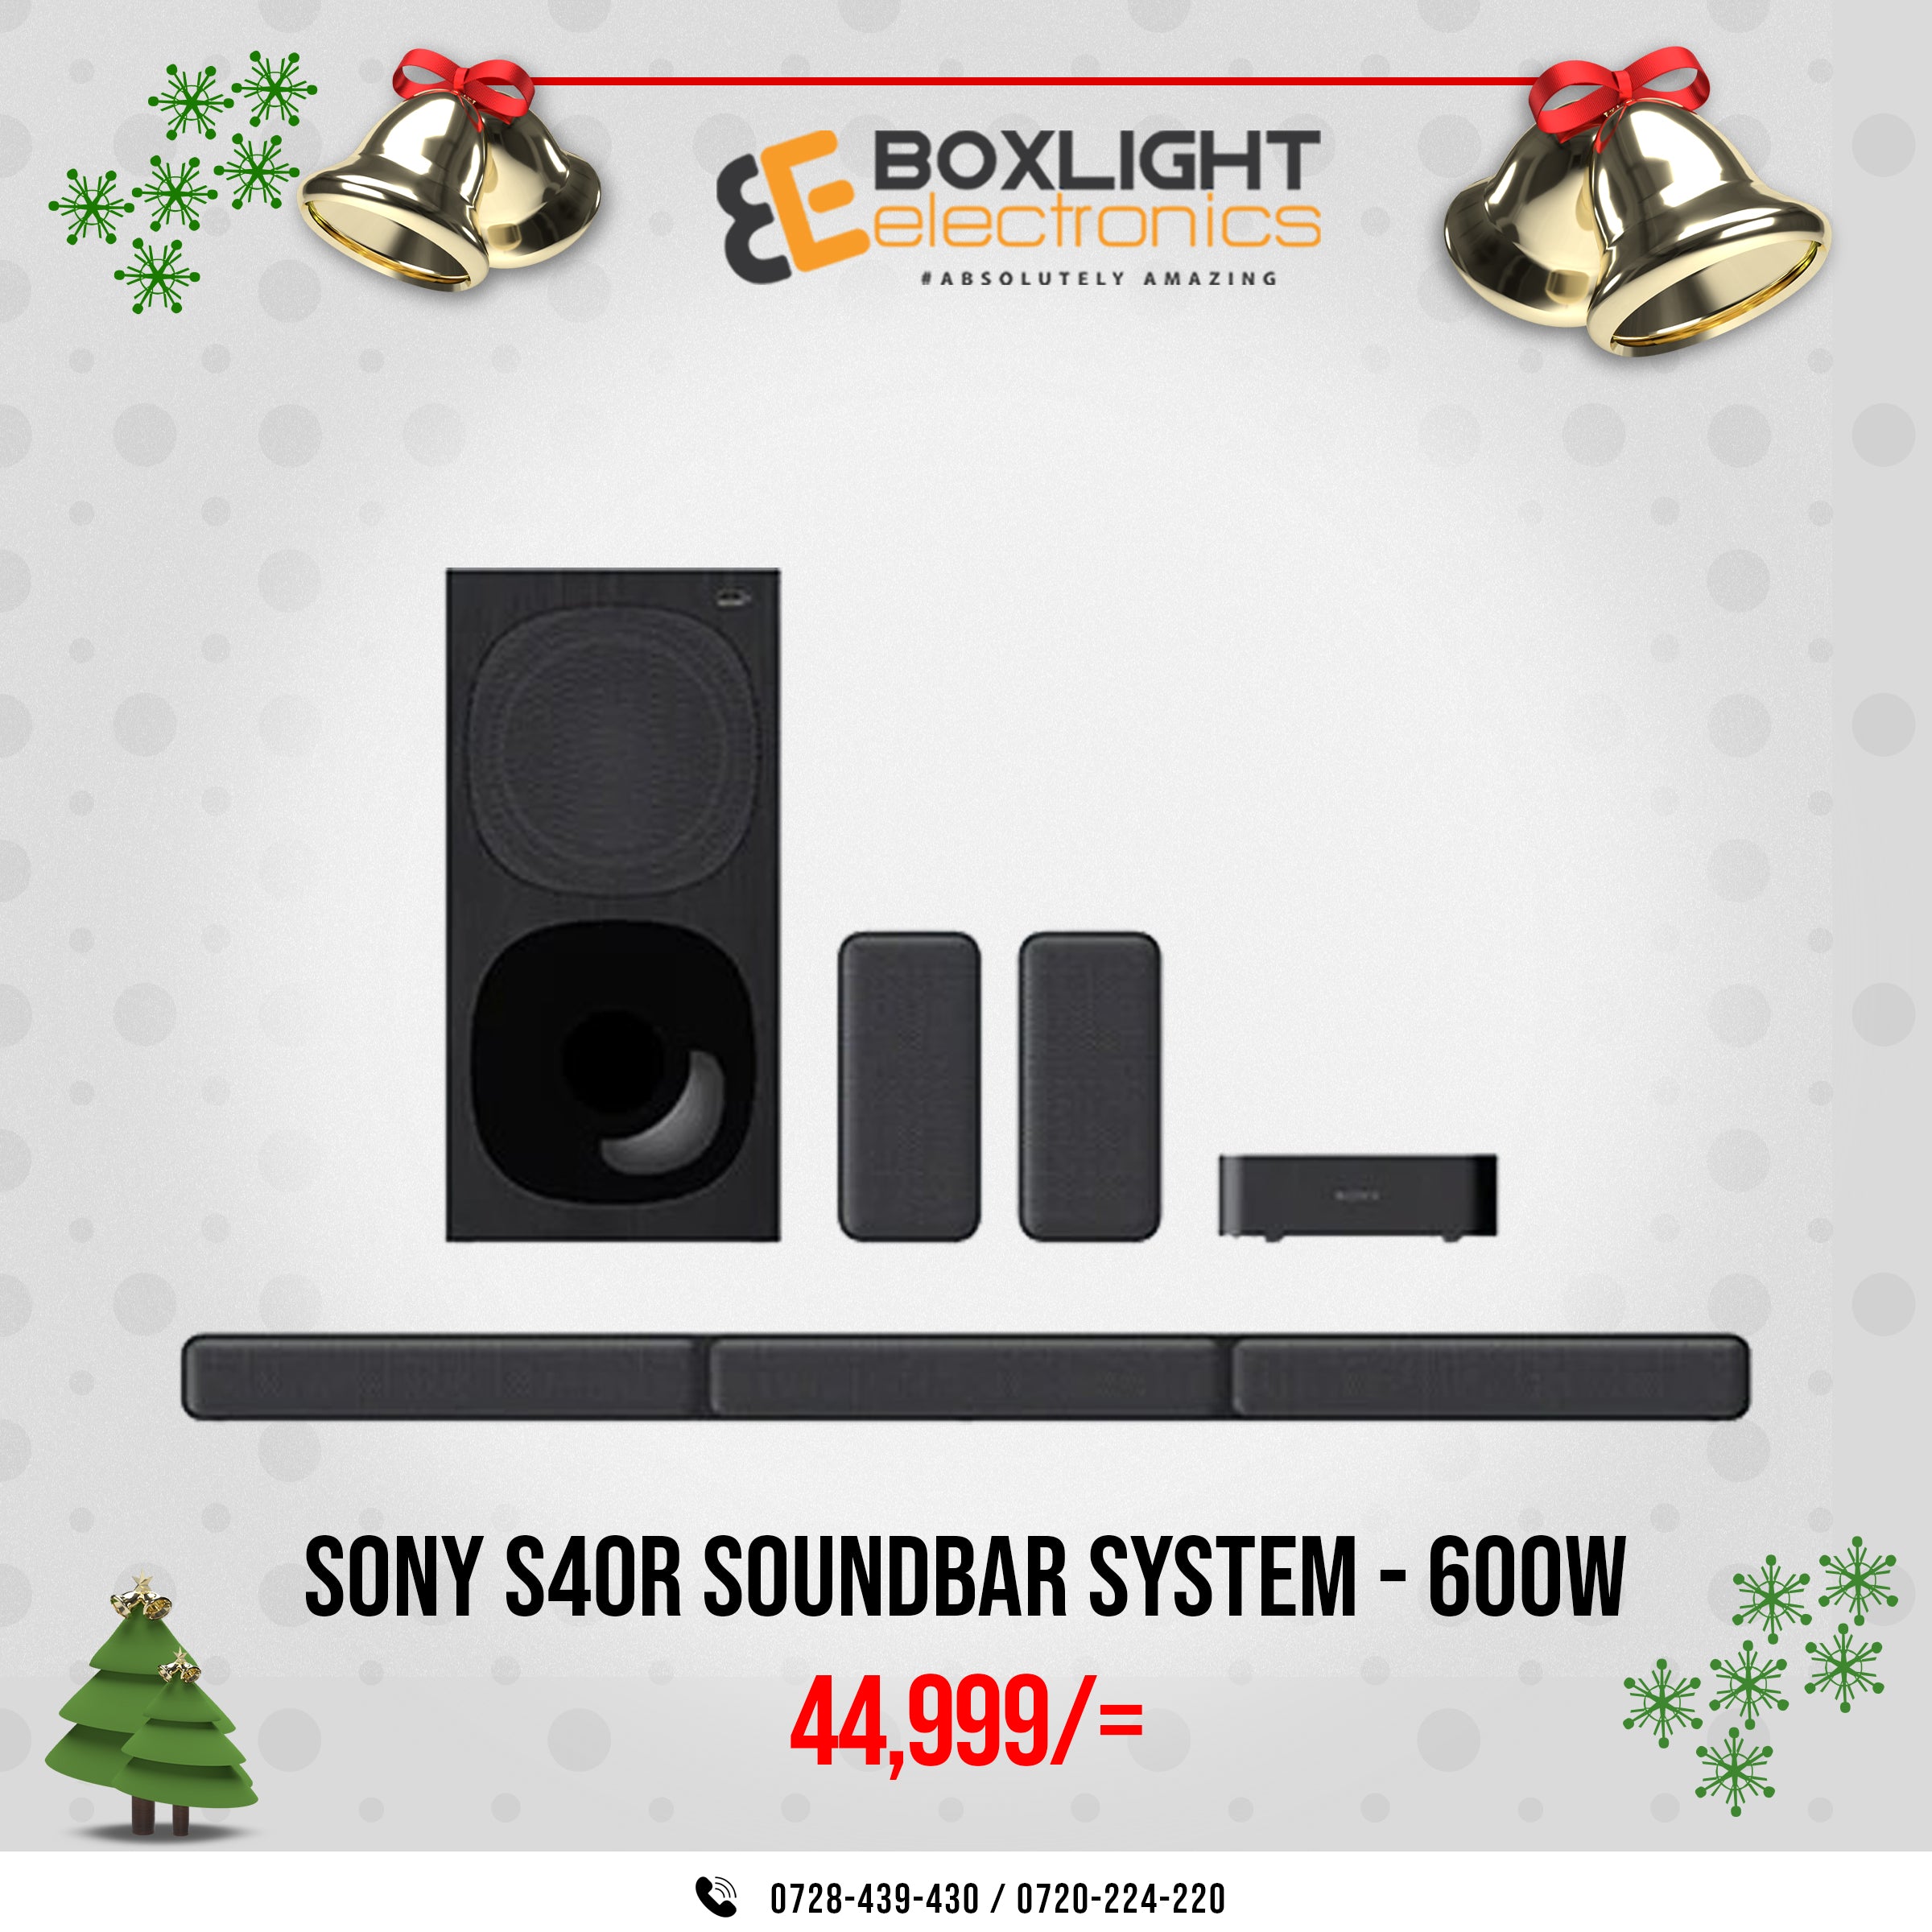 SONY s40 - 5.1CH HOME CINEMA SOUNDBAR SYSTEM - 600W - BLACK